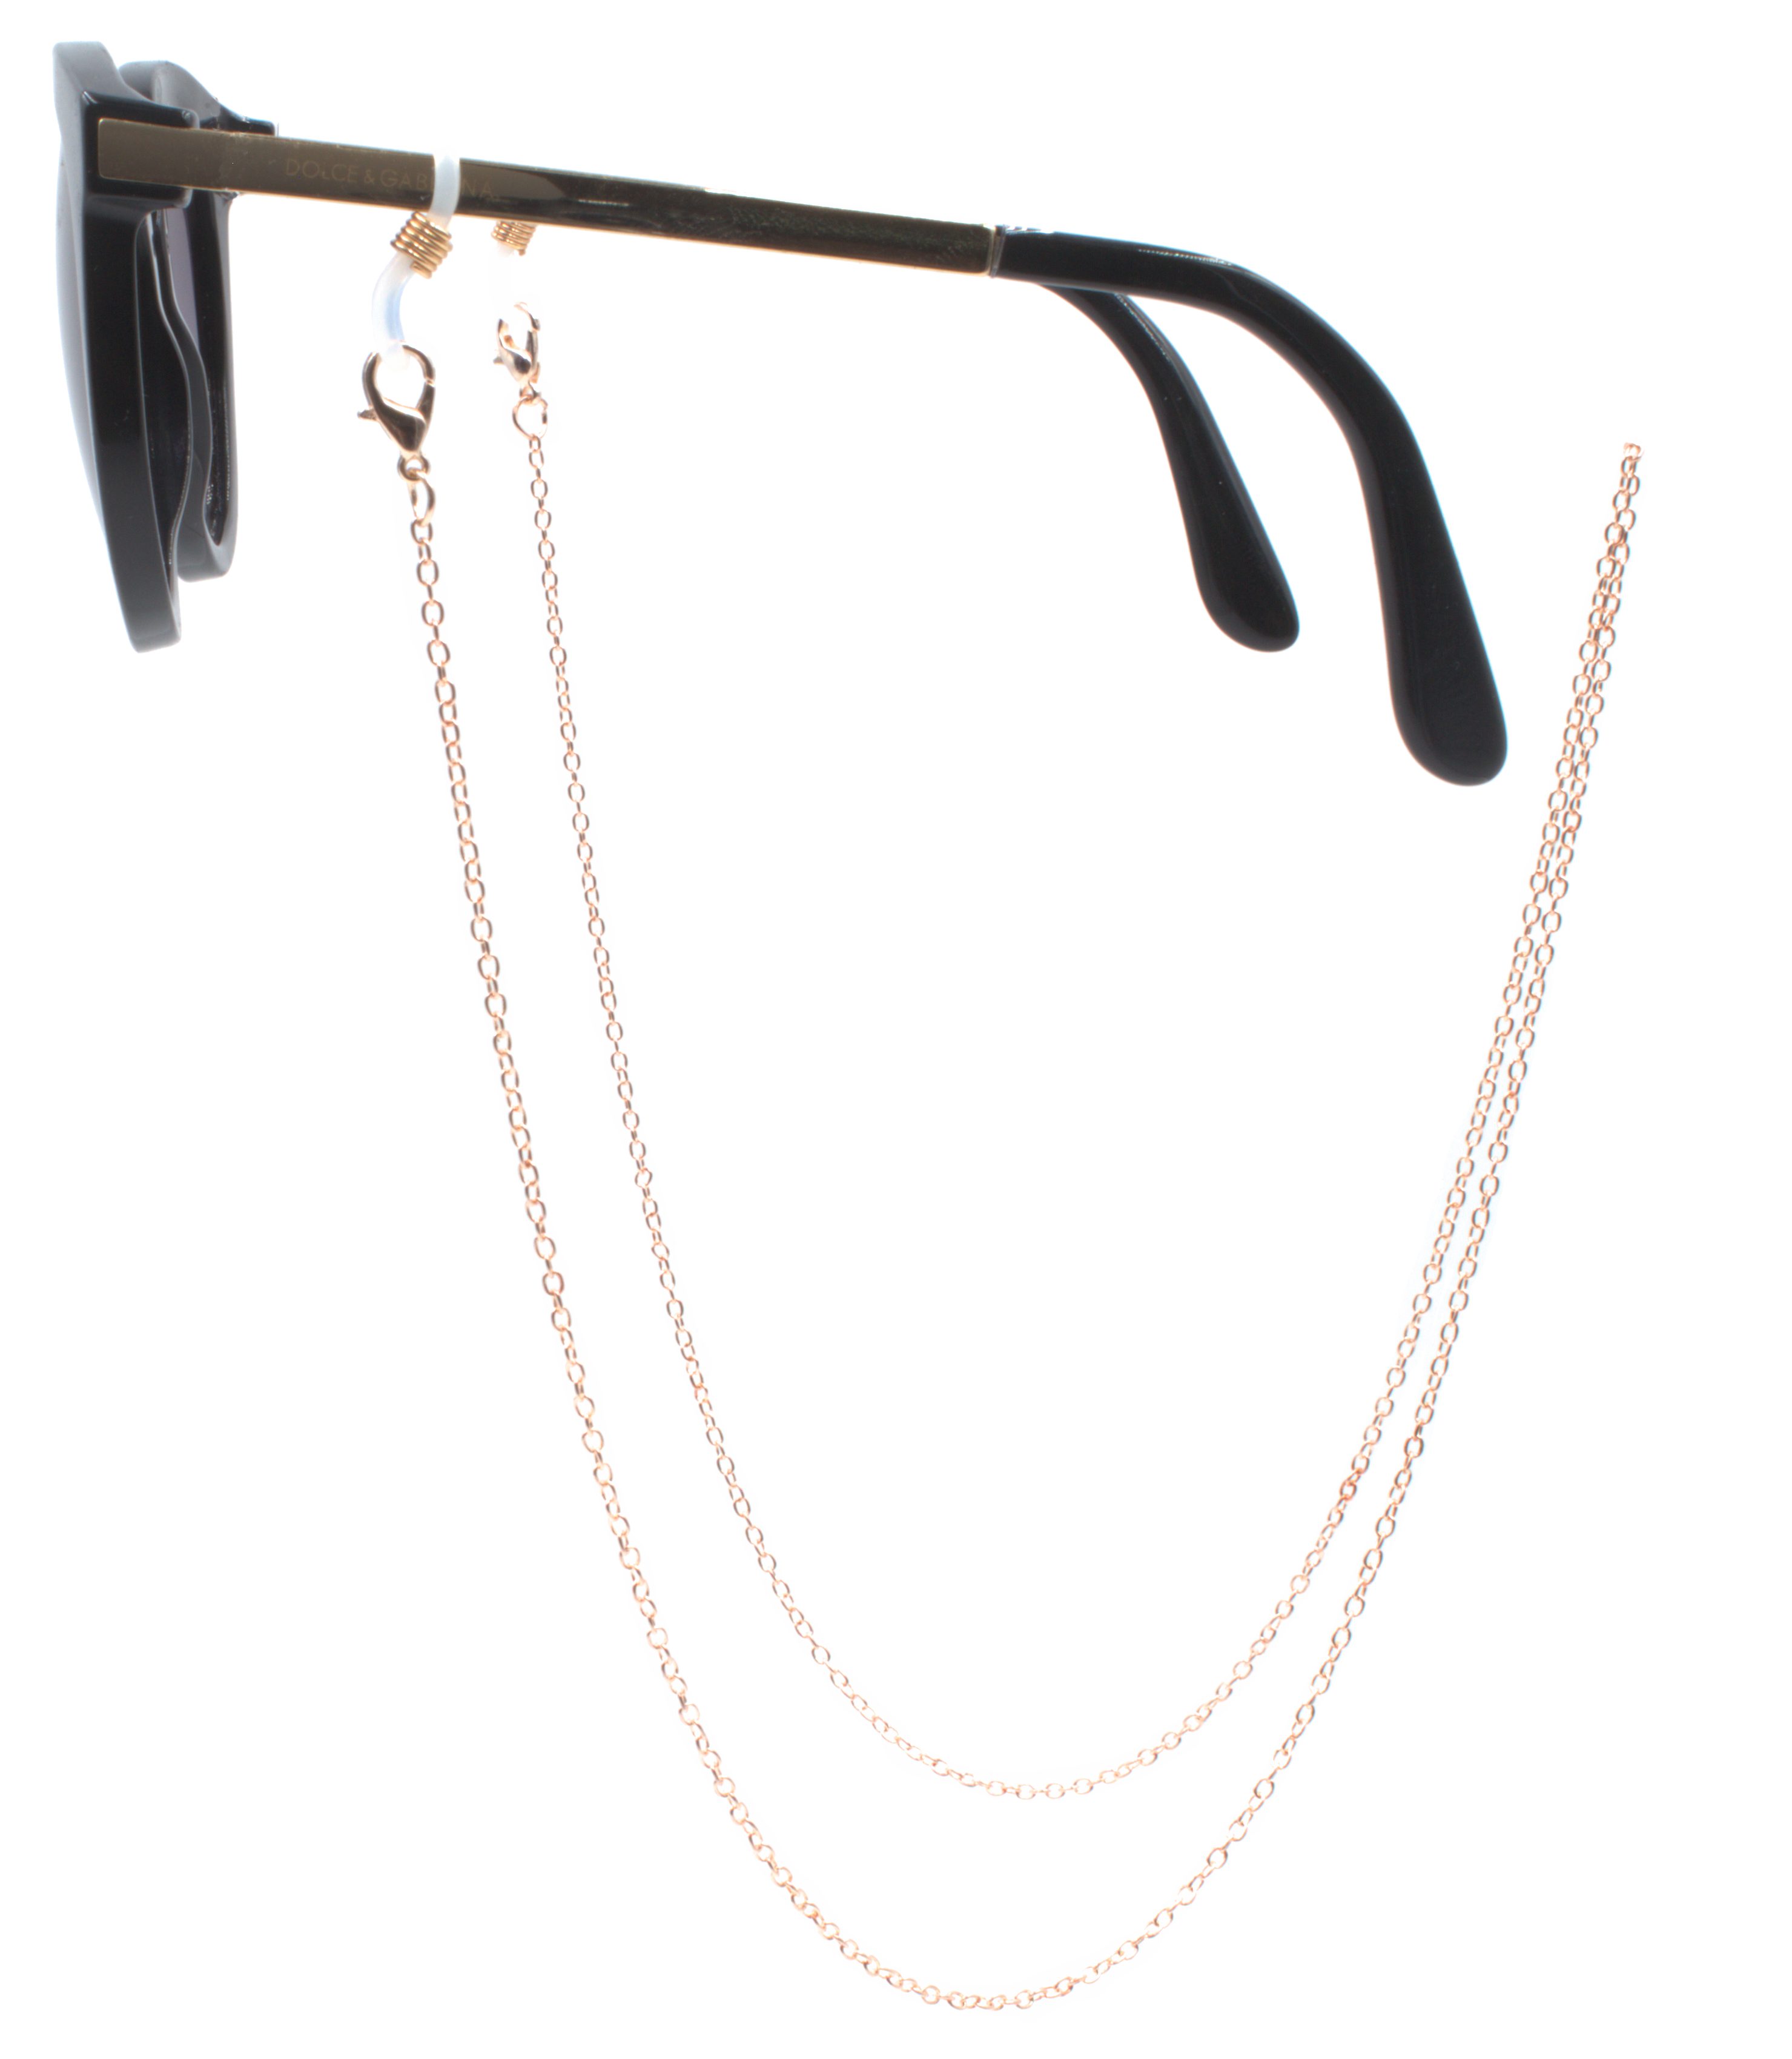 GERNEO Brillenkette GERNEO® - Nizza – korrosionsbeständige Brillenkette & Maskenhalter, vergoldet oder versilbert – einzigartig hochwertige Brillenkette Rosé